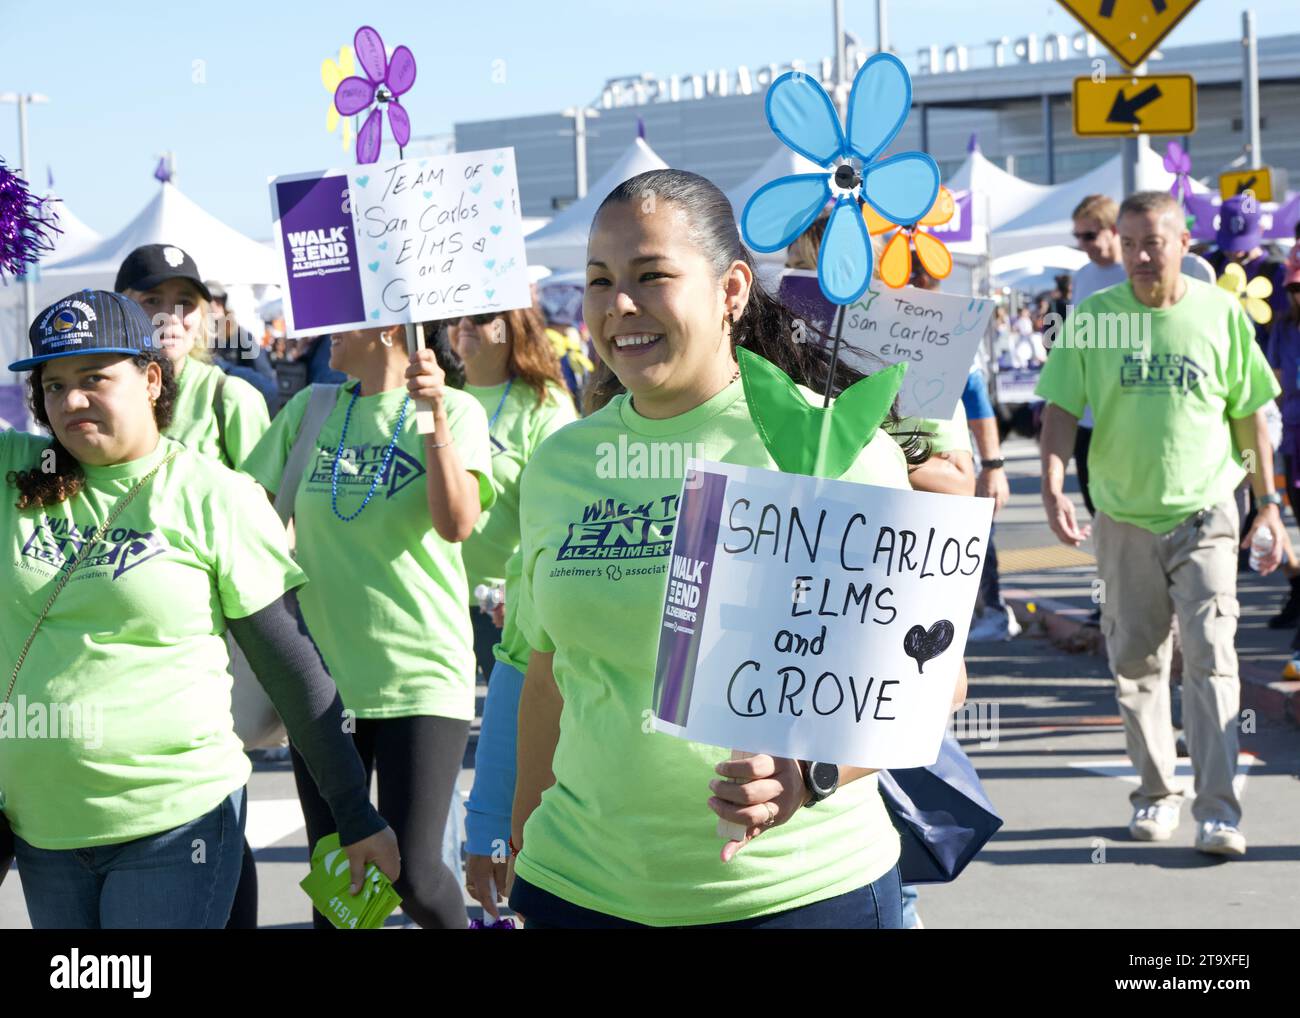 San Francisco, CA - 4 novembre 2023 : participants à la Marche annuelle pour mettre fin à la maladie d'Alzheimer, le plus grand événement mondial pour sensibiliser et financer la maladie d'Alzheimer Banque D'Images